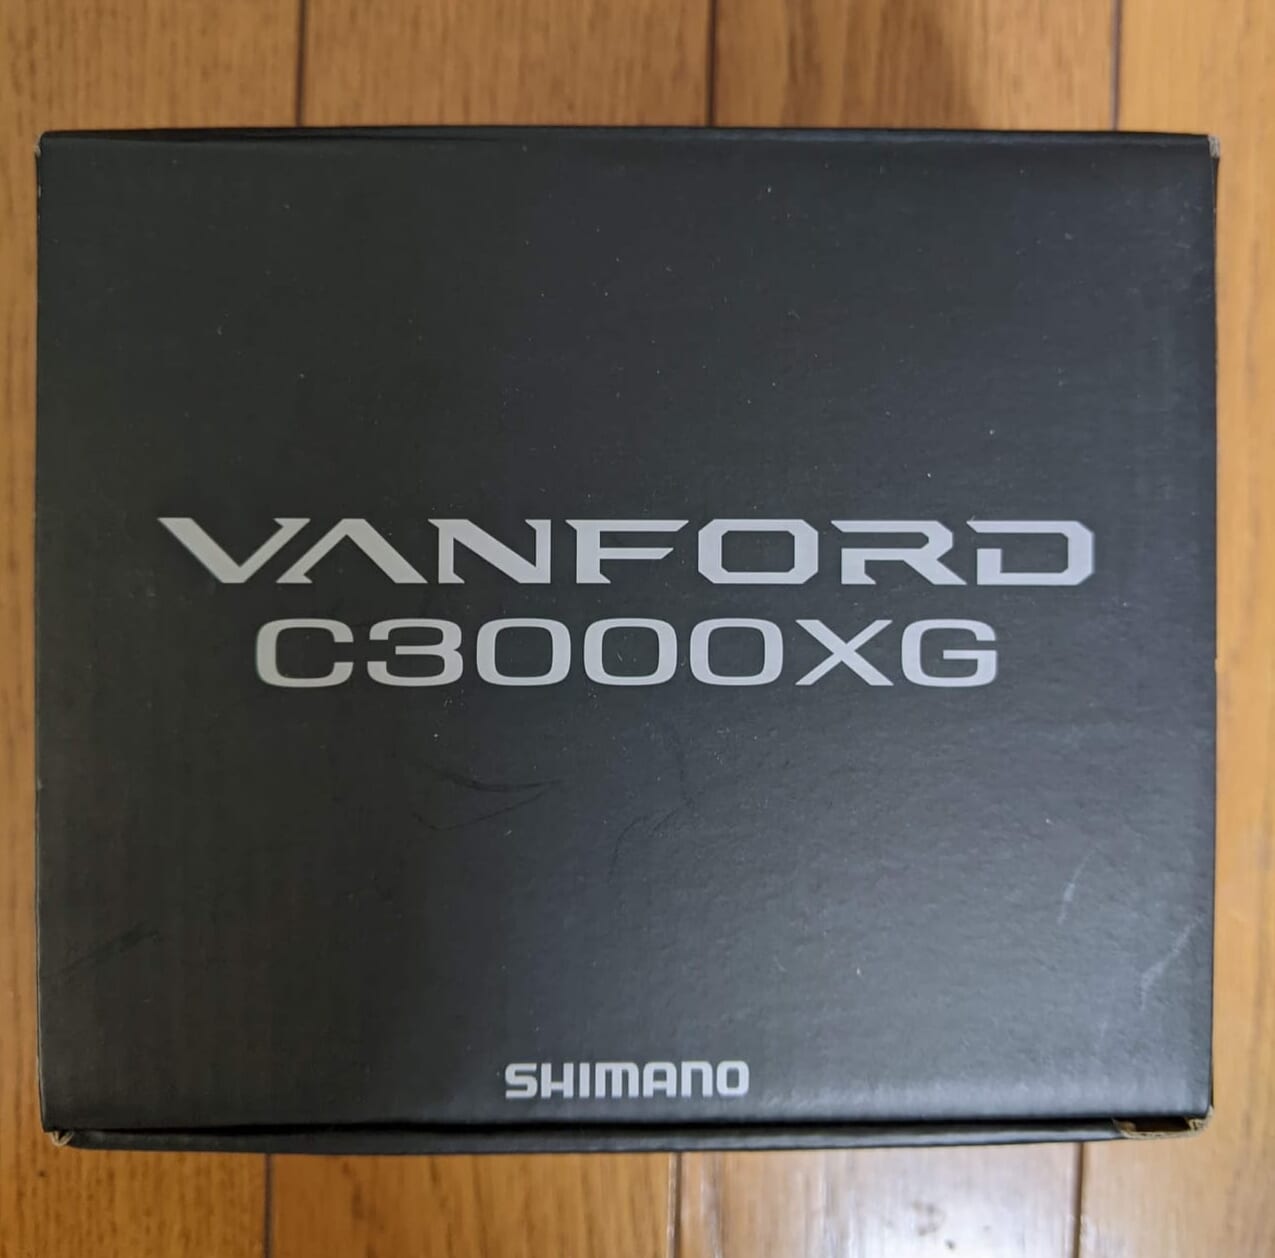 チニング用に新リールを購入。シマノの「ヴァンフォード C3000XG」の 